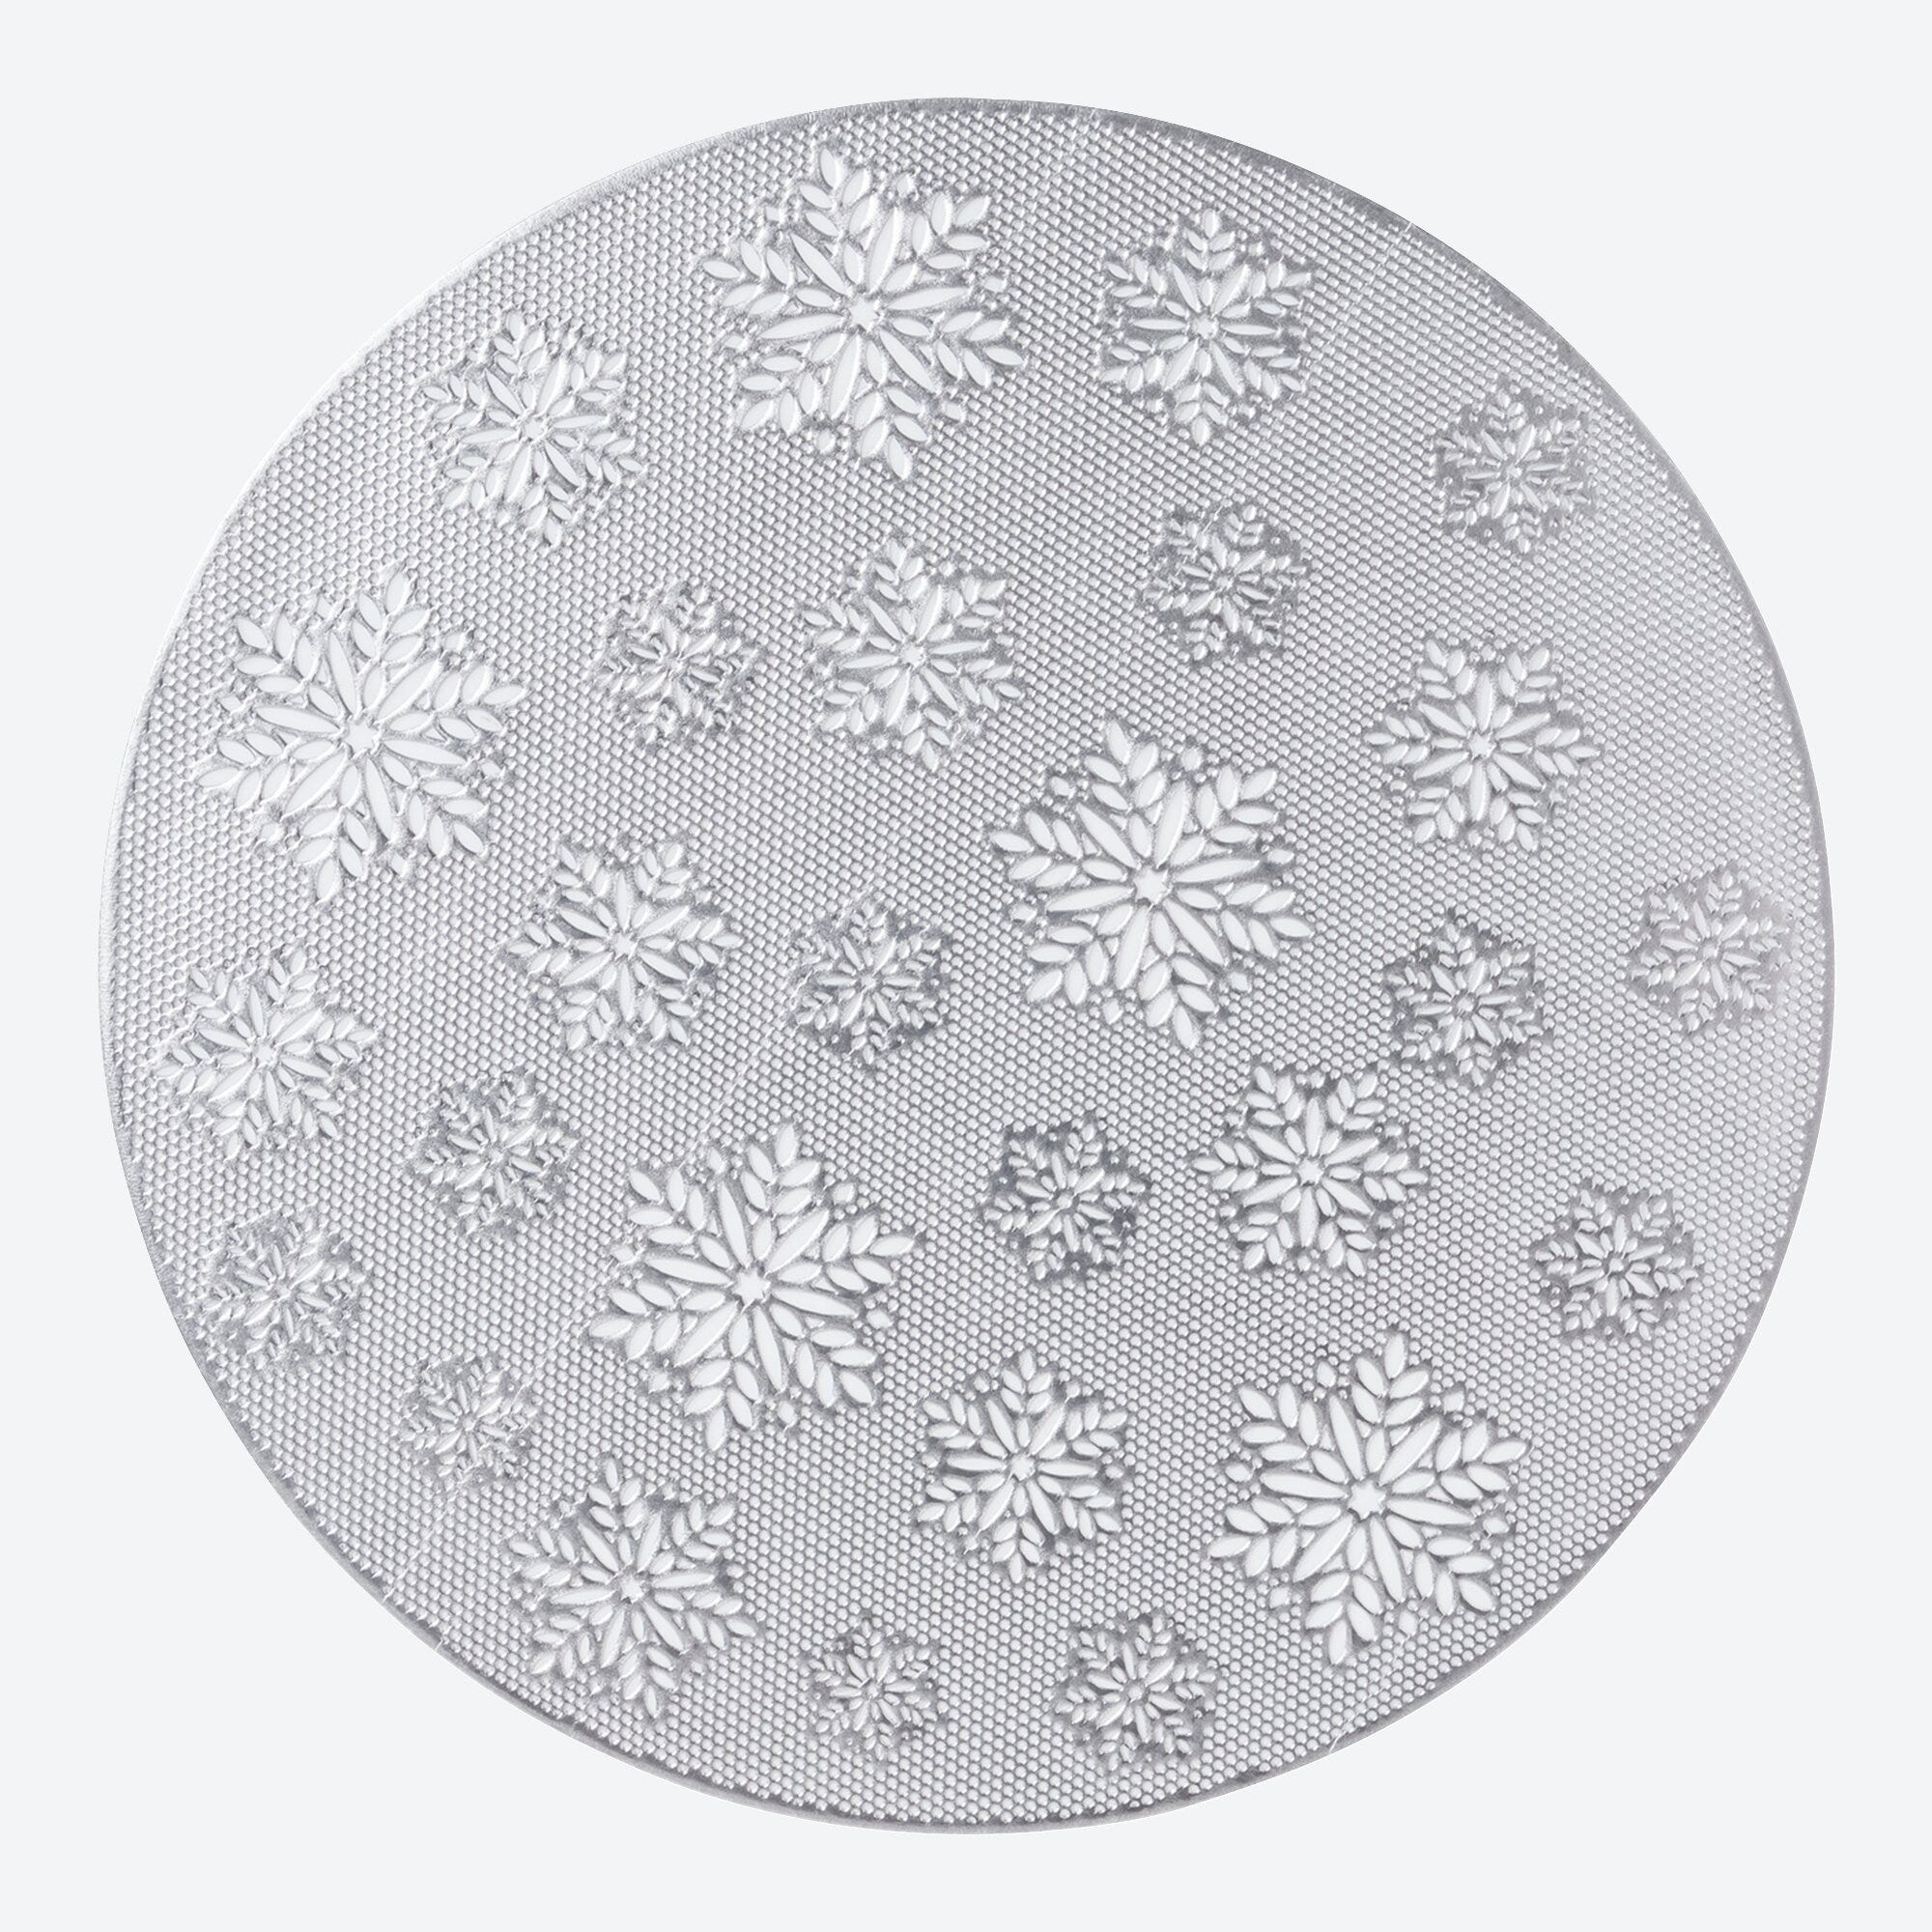 Deckchen im Schneeflocken-Design, Ø ca. 38cm